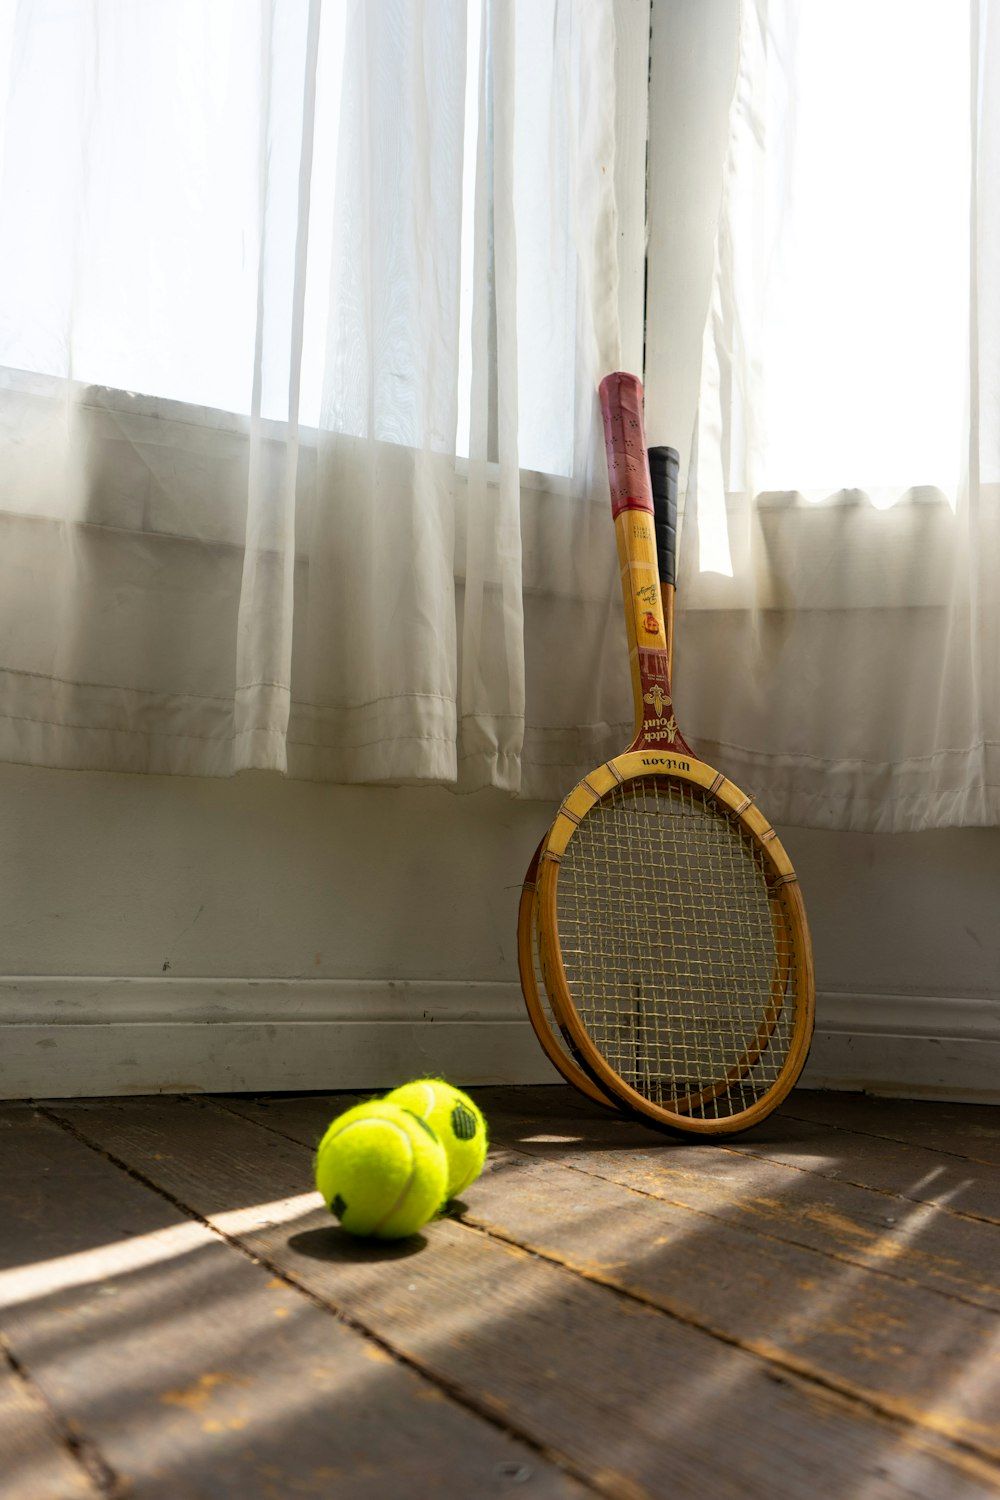 gelb-schwarzer Tennisschläger